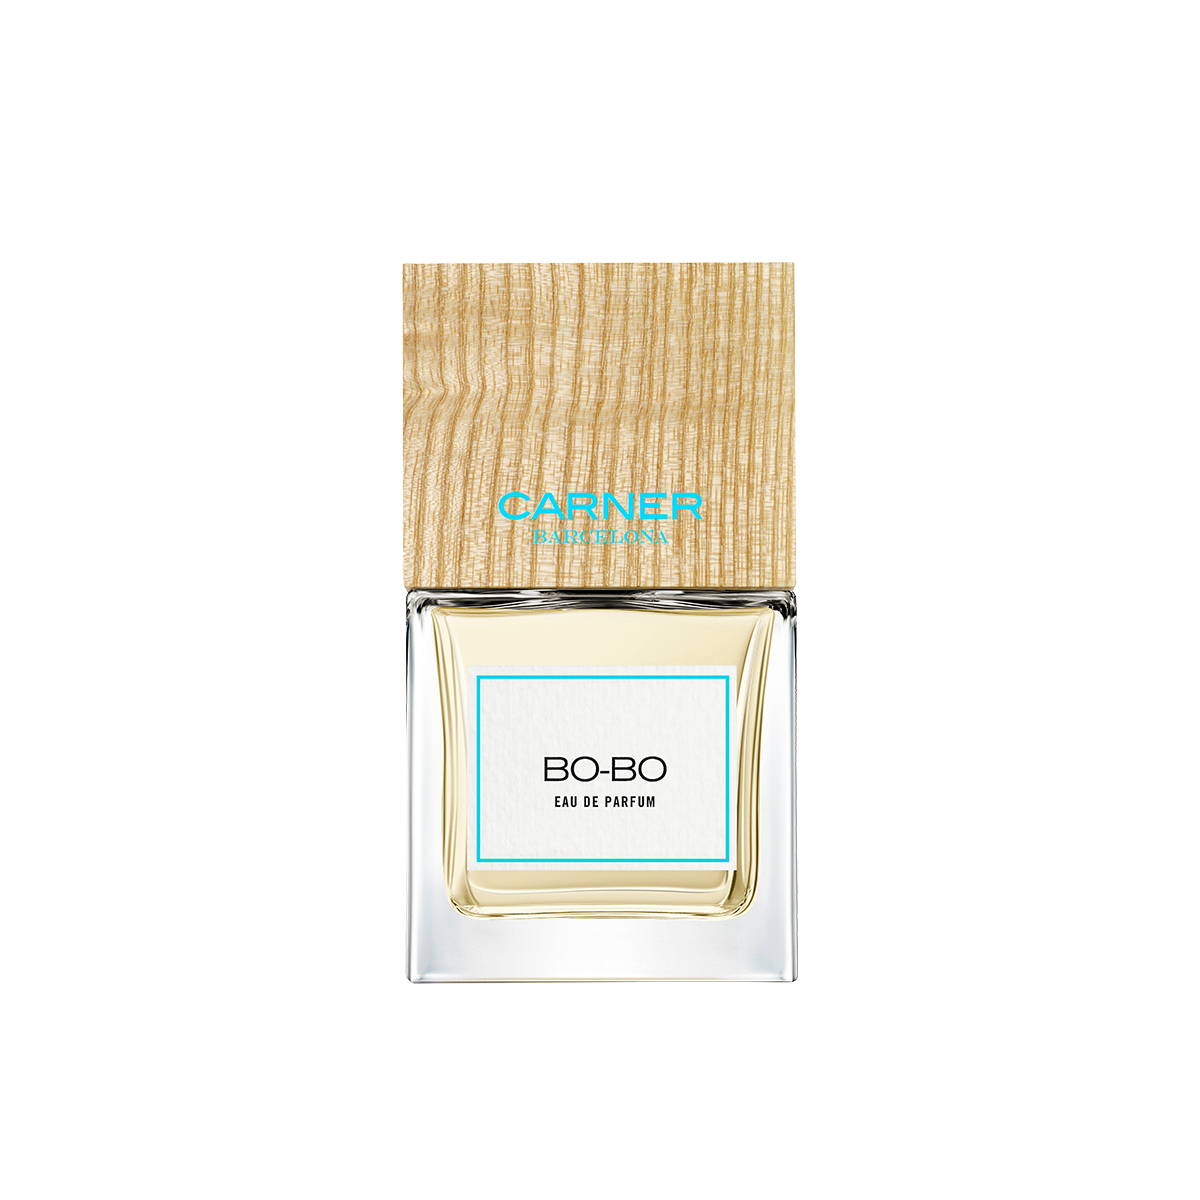 Bo-Bo <br> Eau de Parfum 50ml / 100ml